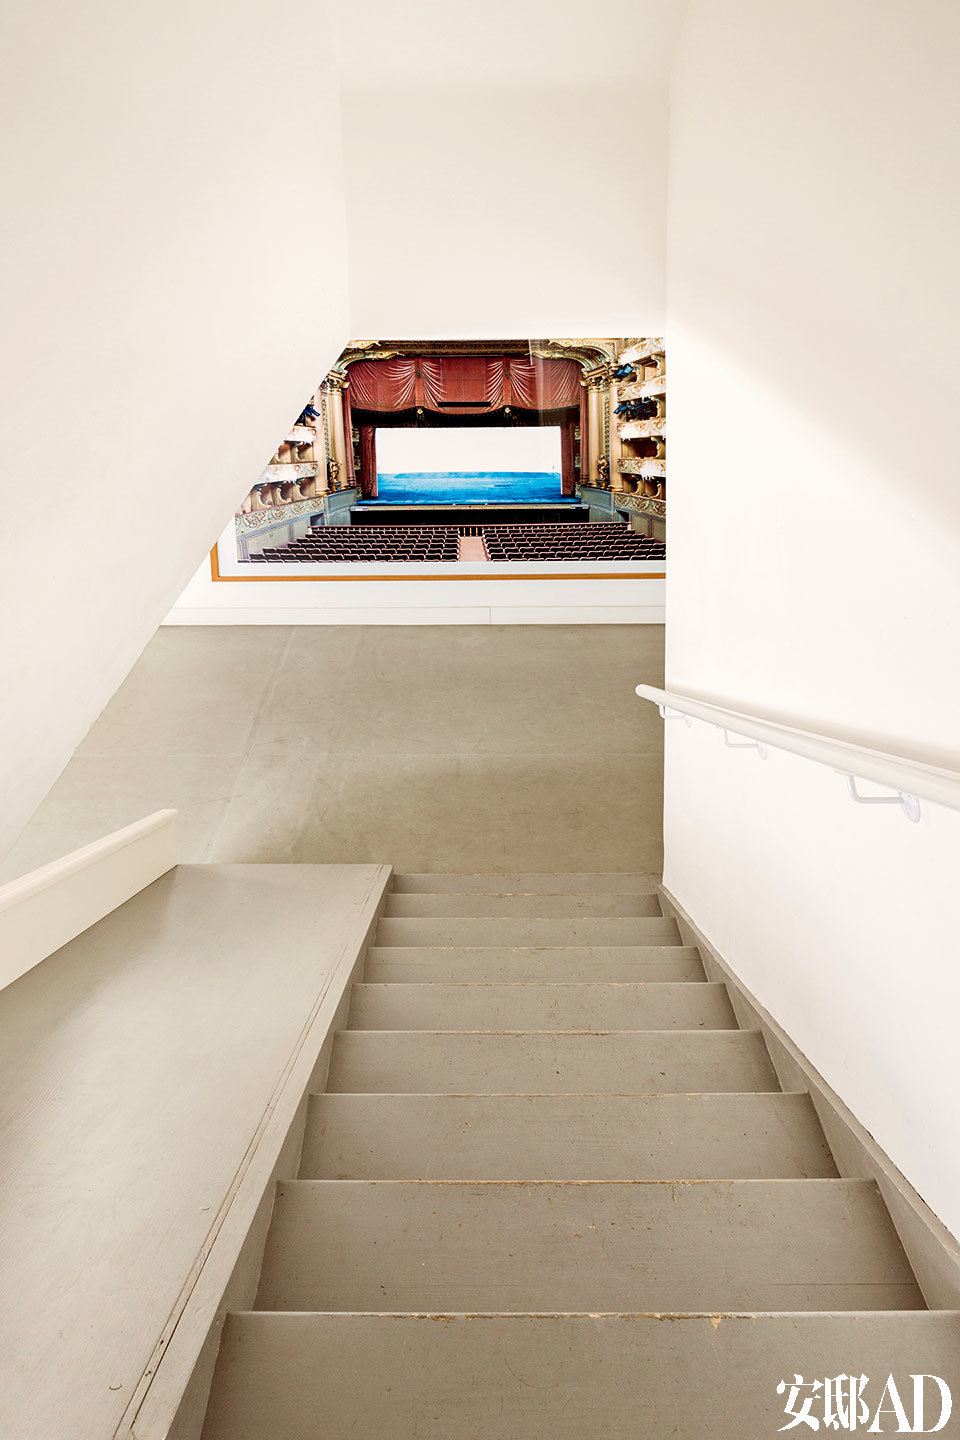 地下室是孩子们的游乐区。楼梯尽头挂着的是德国女艺术家Candida Höfer的作品《Teatro Nacional de São CarlosL isboa V，2005》。